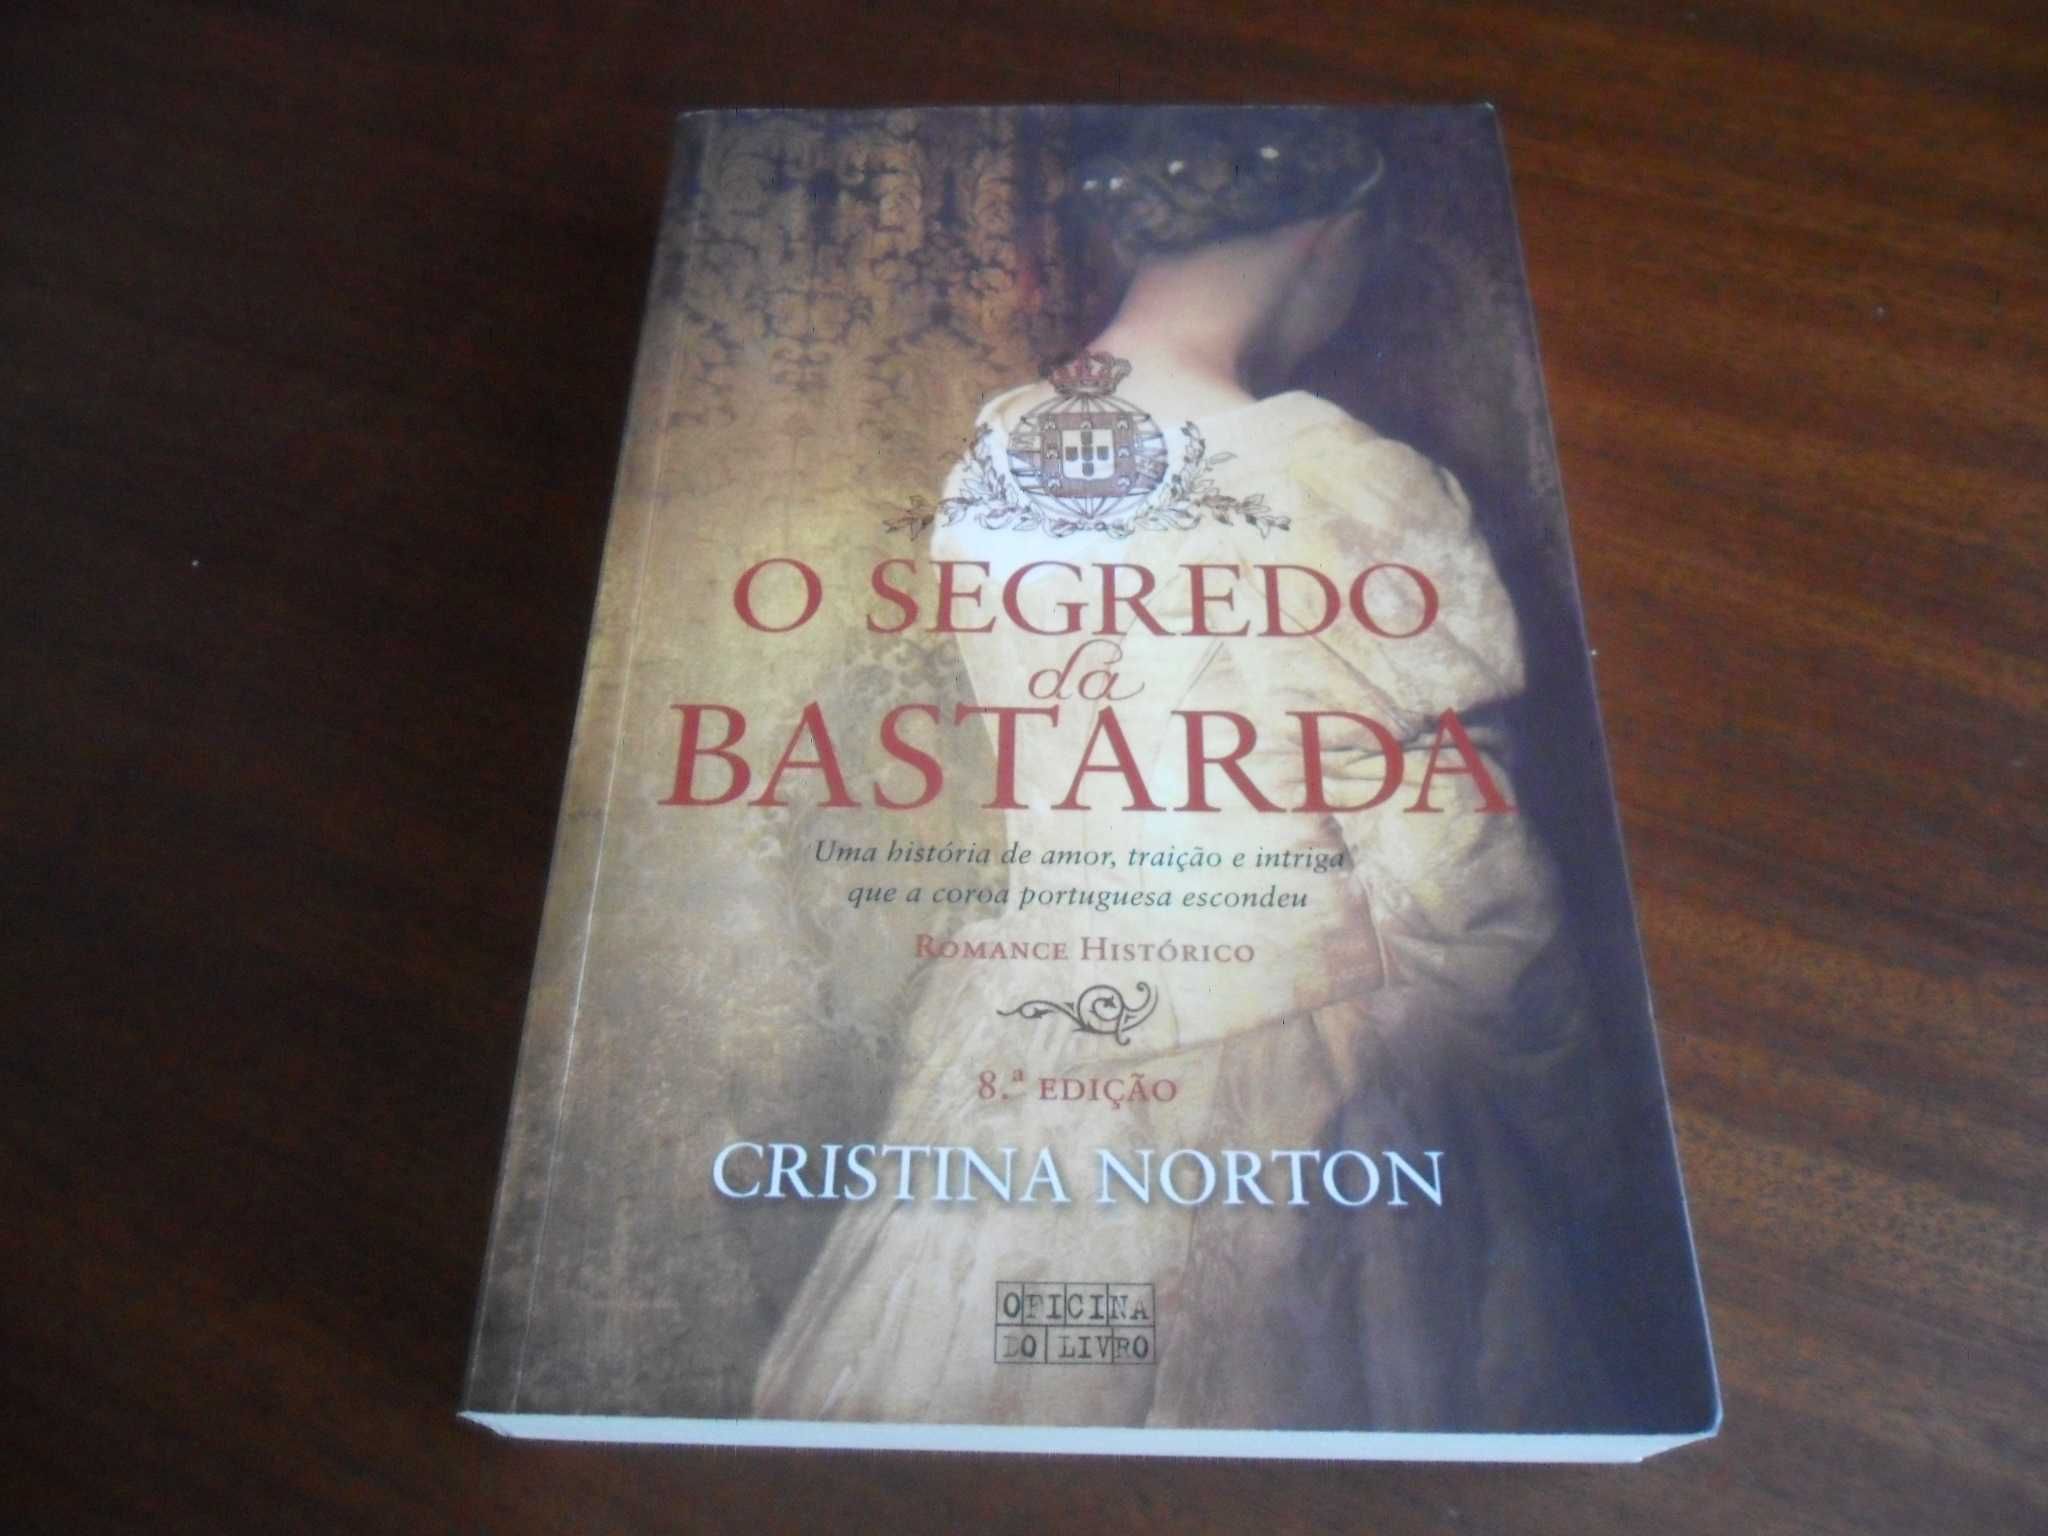 "O Segredo da Bastarda" de Cristina Norton - 8ª Edição de 2013